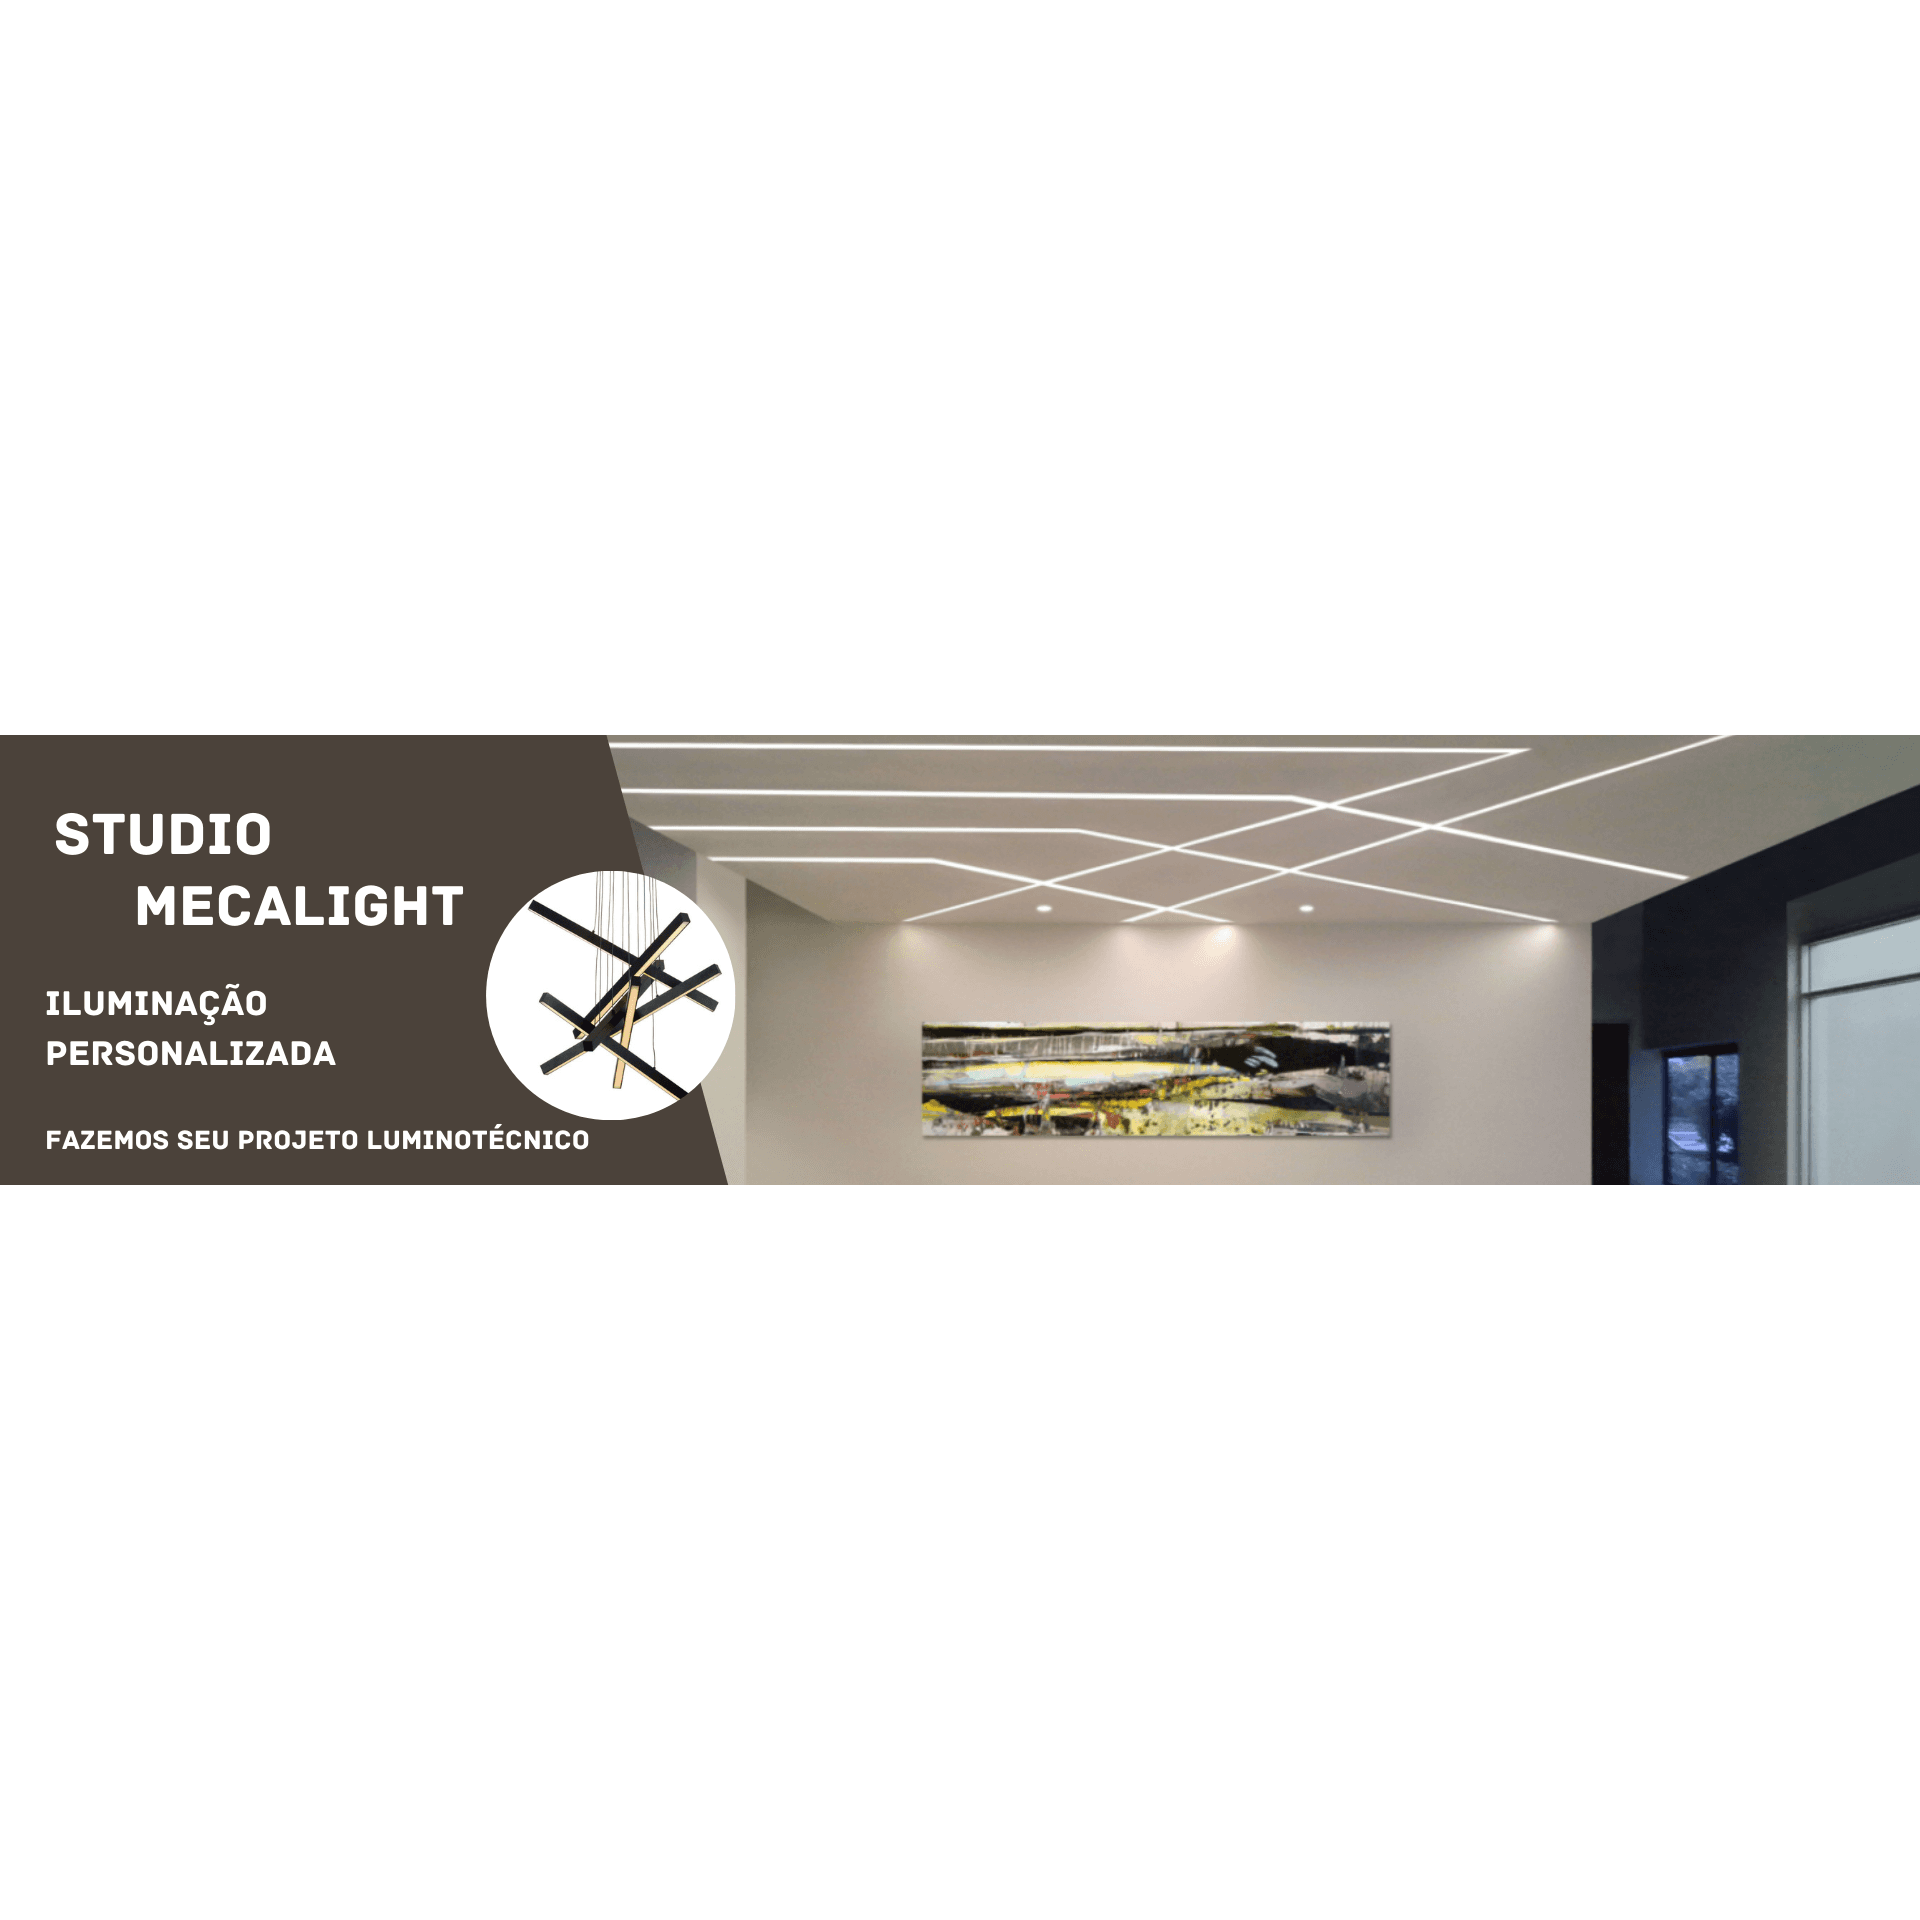 stúdio mecalight projetos personalizados de iluminação